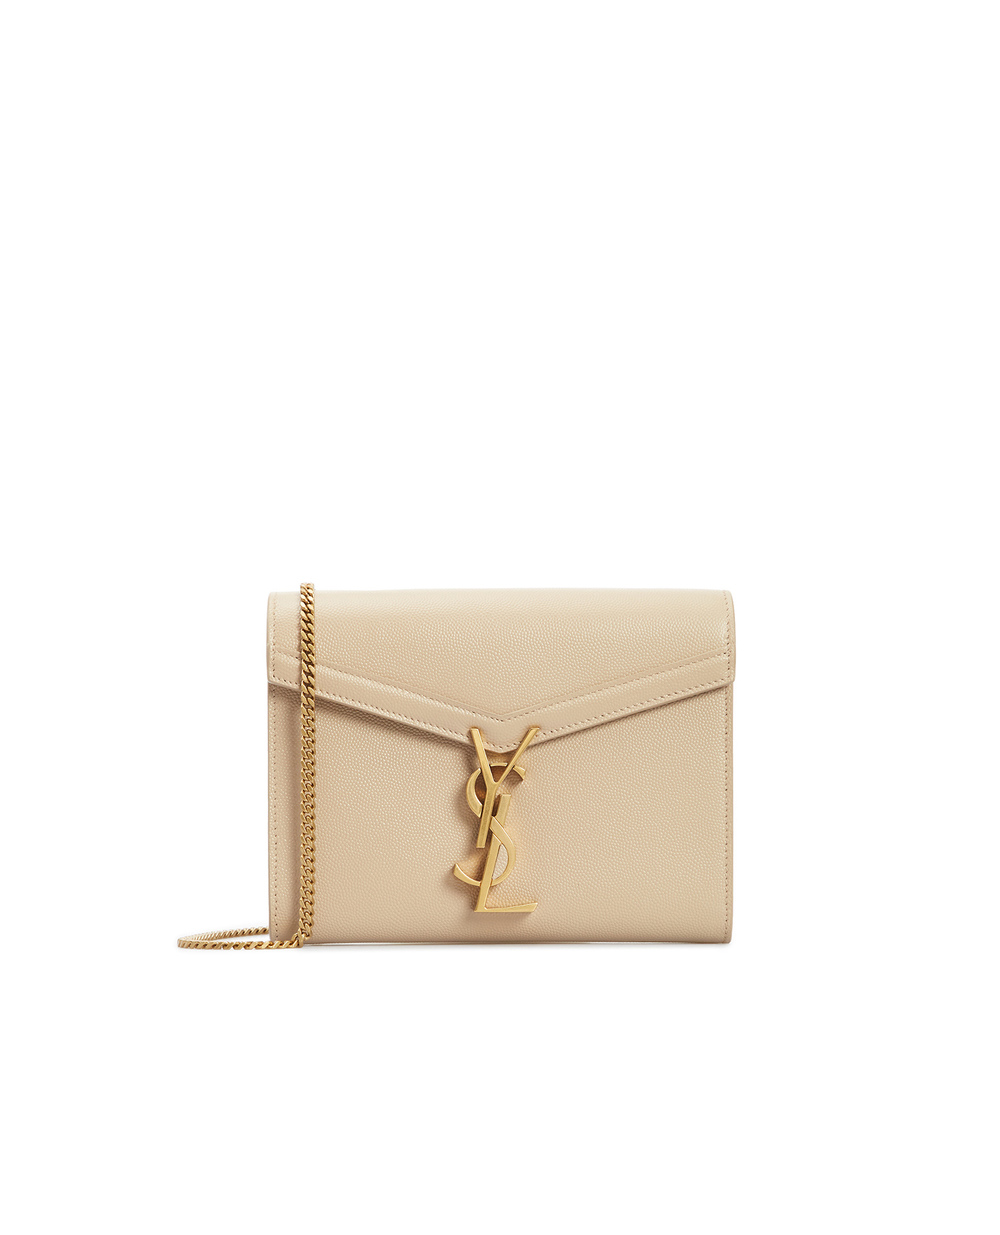 Кожаная сумка Bowaw Cassandra Saint Laurent 635023-BOWAW, бежевый цвет • Купить в интернет-магазине Kameron